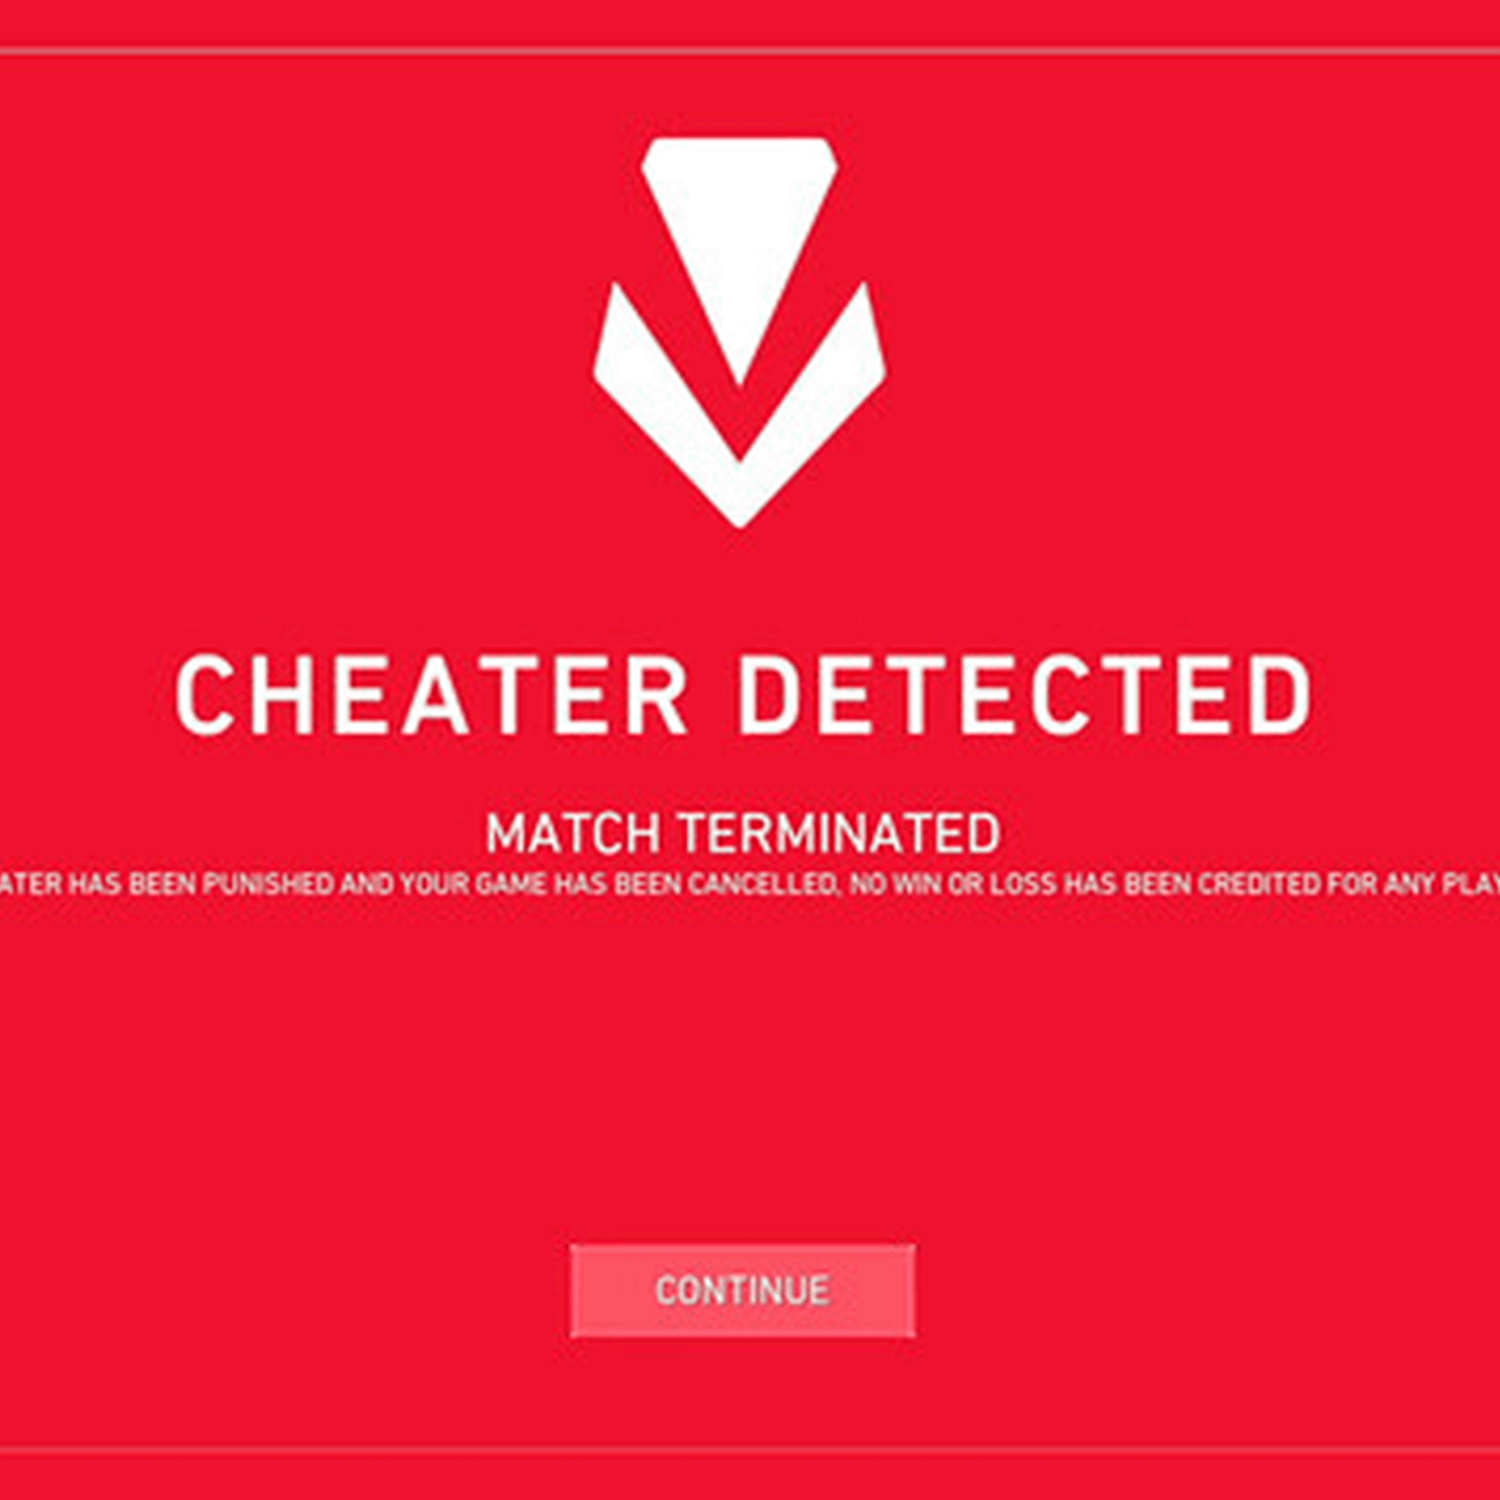 Software Anti-Cheats Vanguard de Riot Games está bloqueando y tomando capturas de pantalla de las PC de los usuarios